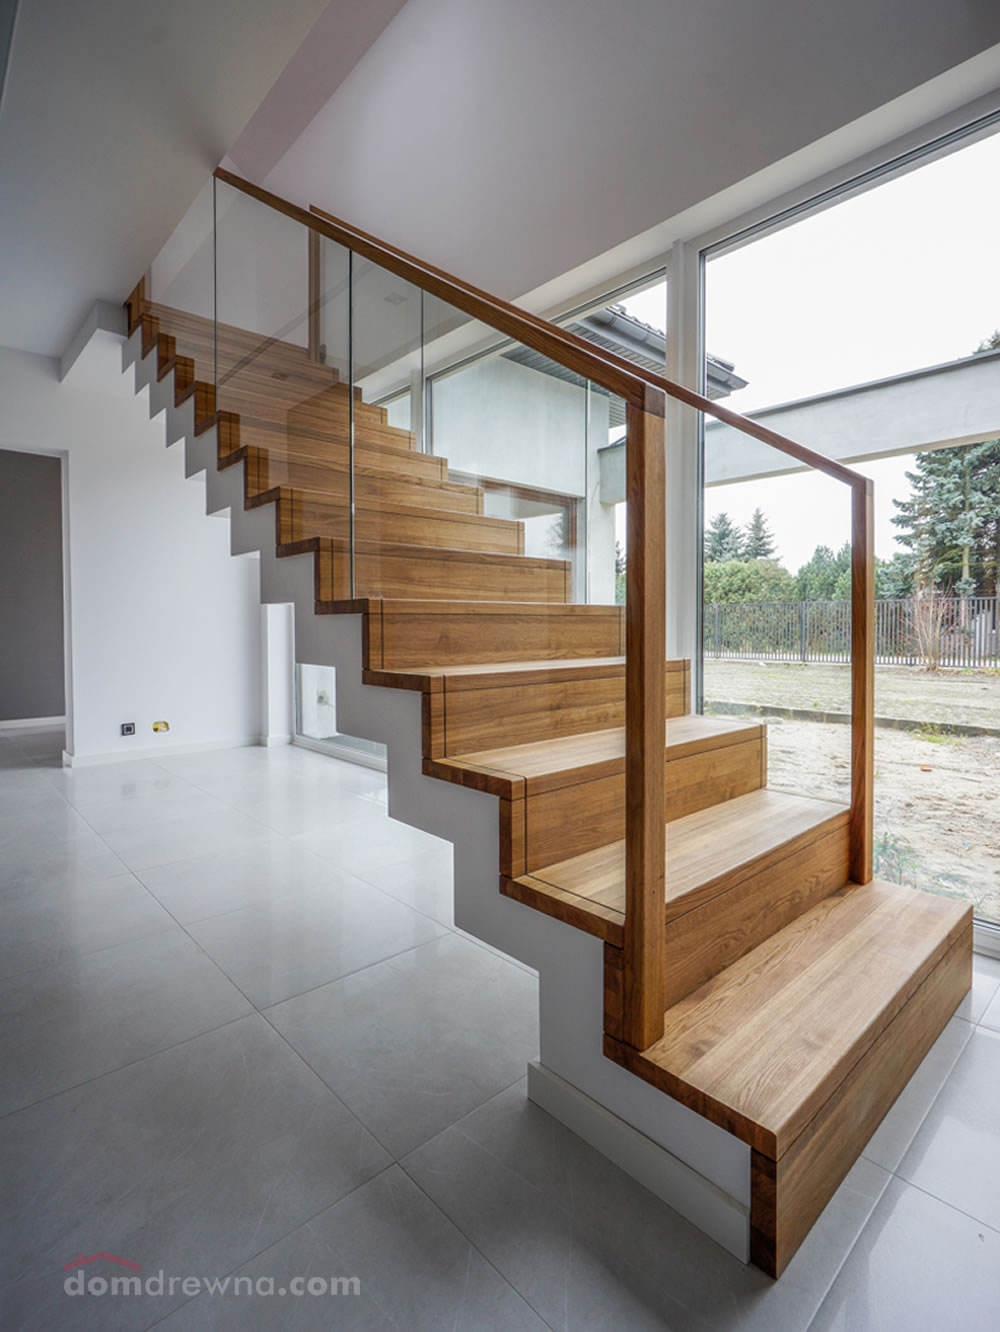 Obłożenie schodów betonowych drewnem w klasyczny sposób "bez noska" stopnia. Zastosowane szkło, żeby...